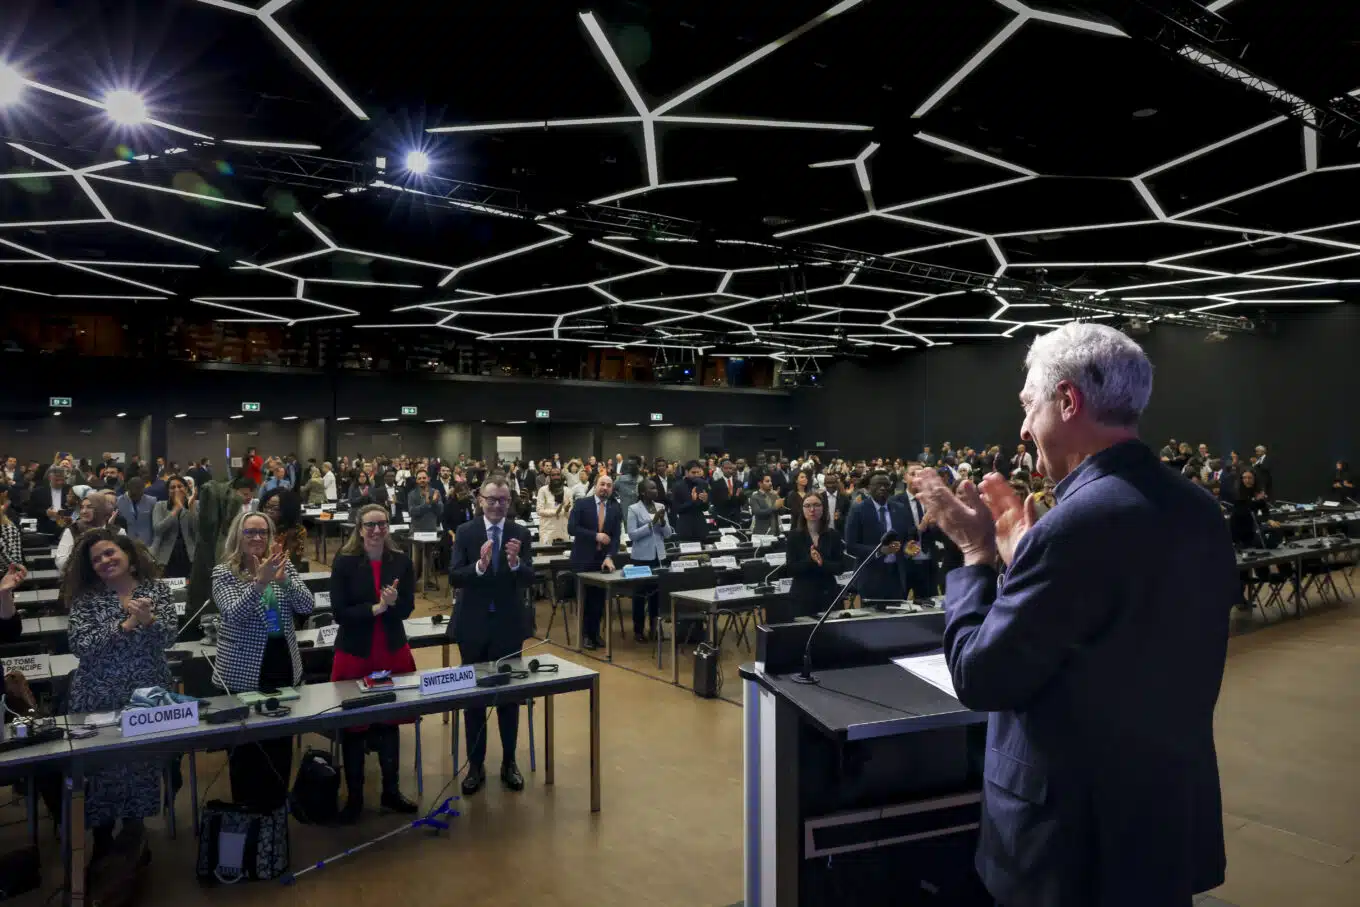 Le Haut Commissaire des Nations Unies pour les réfugiés, Filippo Grandi, se tient devant un podium, applaudissant, dans une salle au ciel géographique noir, devant un parterre de dirigeants du monde entier. 